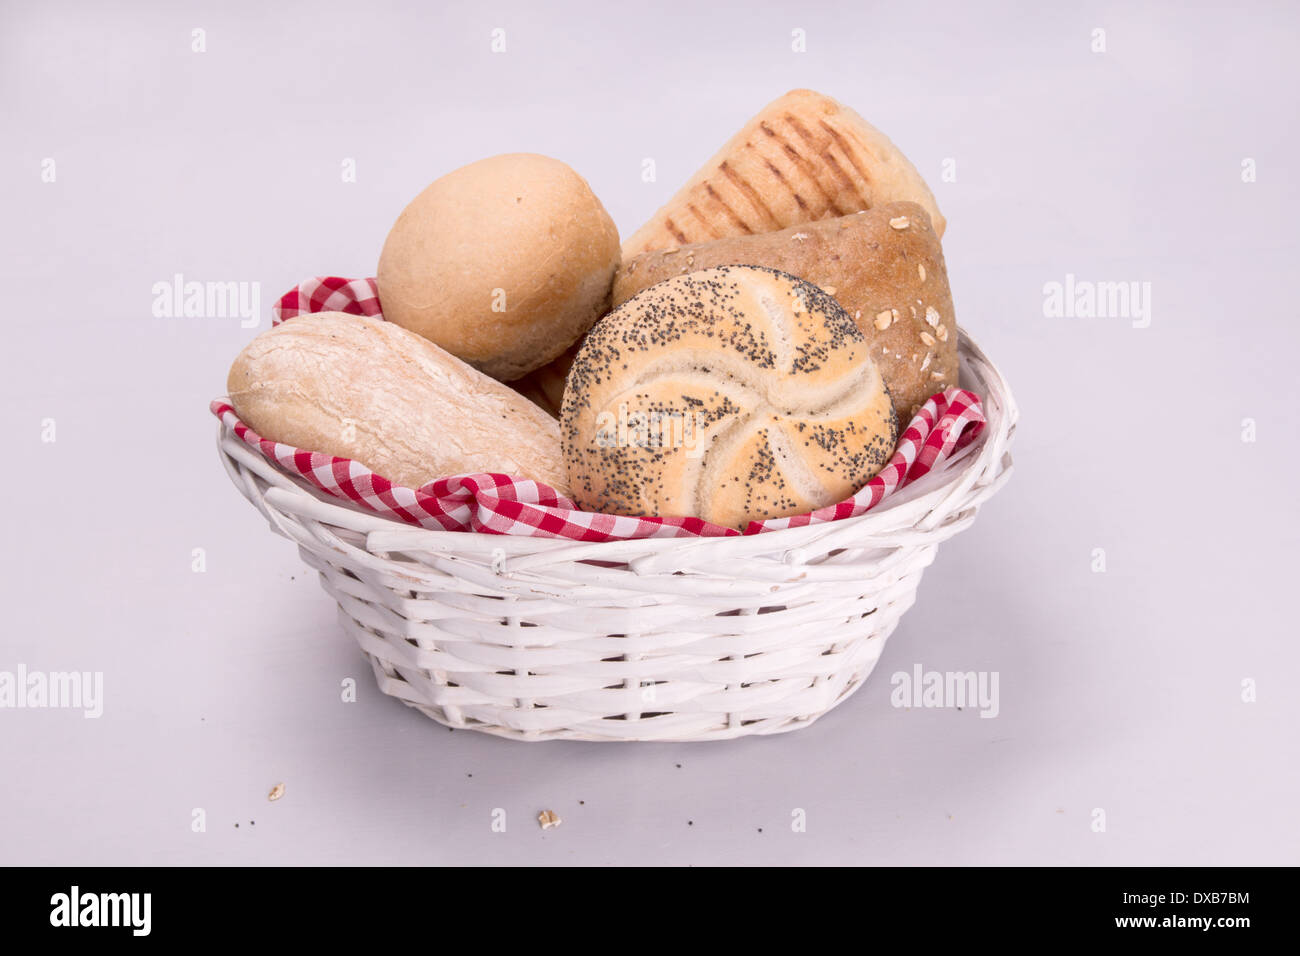 "Weiße und braune Brot Brötchen"weißen Korb""rot-weiß karierte Futter"ausgesät Brot" Mohn (1 von 5) Stockfoto